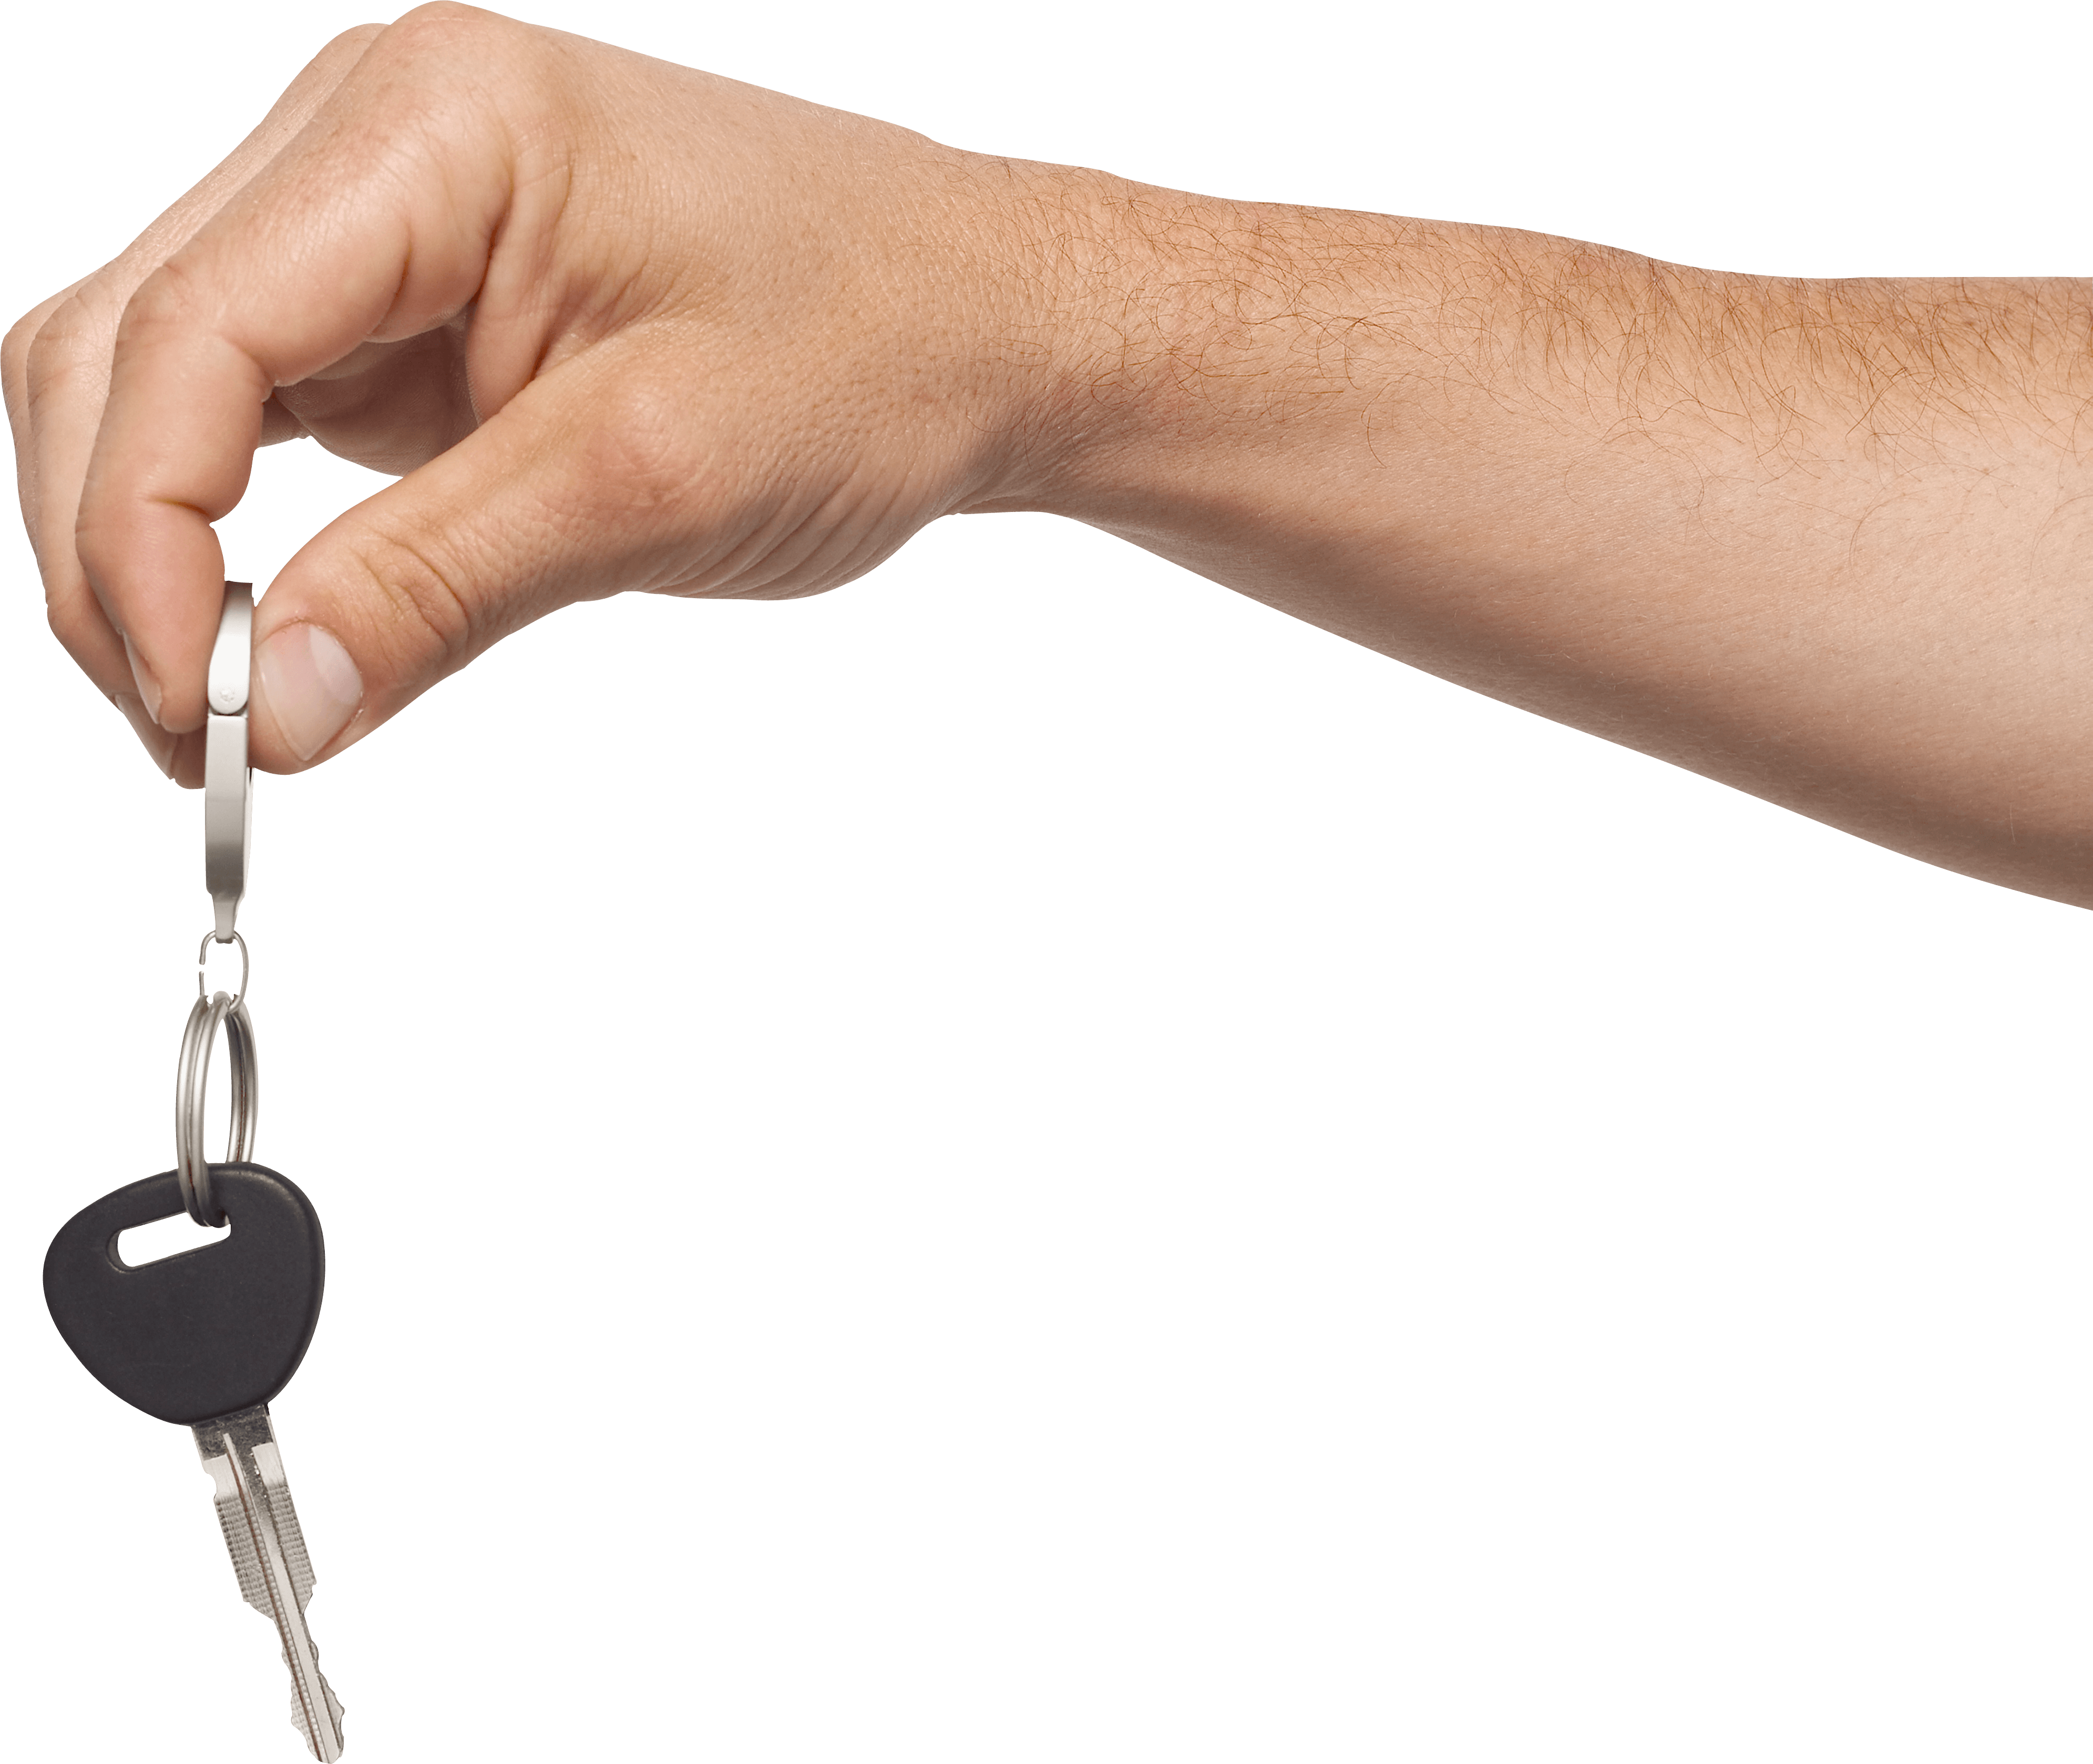 Hand key. Рука с ключами. Ключи от квартиры в руке. Рука с ключами на прозрачном фоне. Ключи от машины в руке.